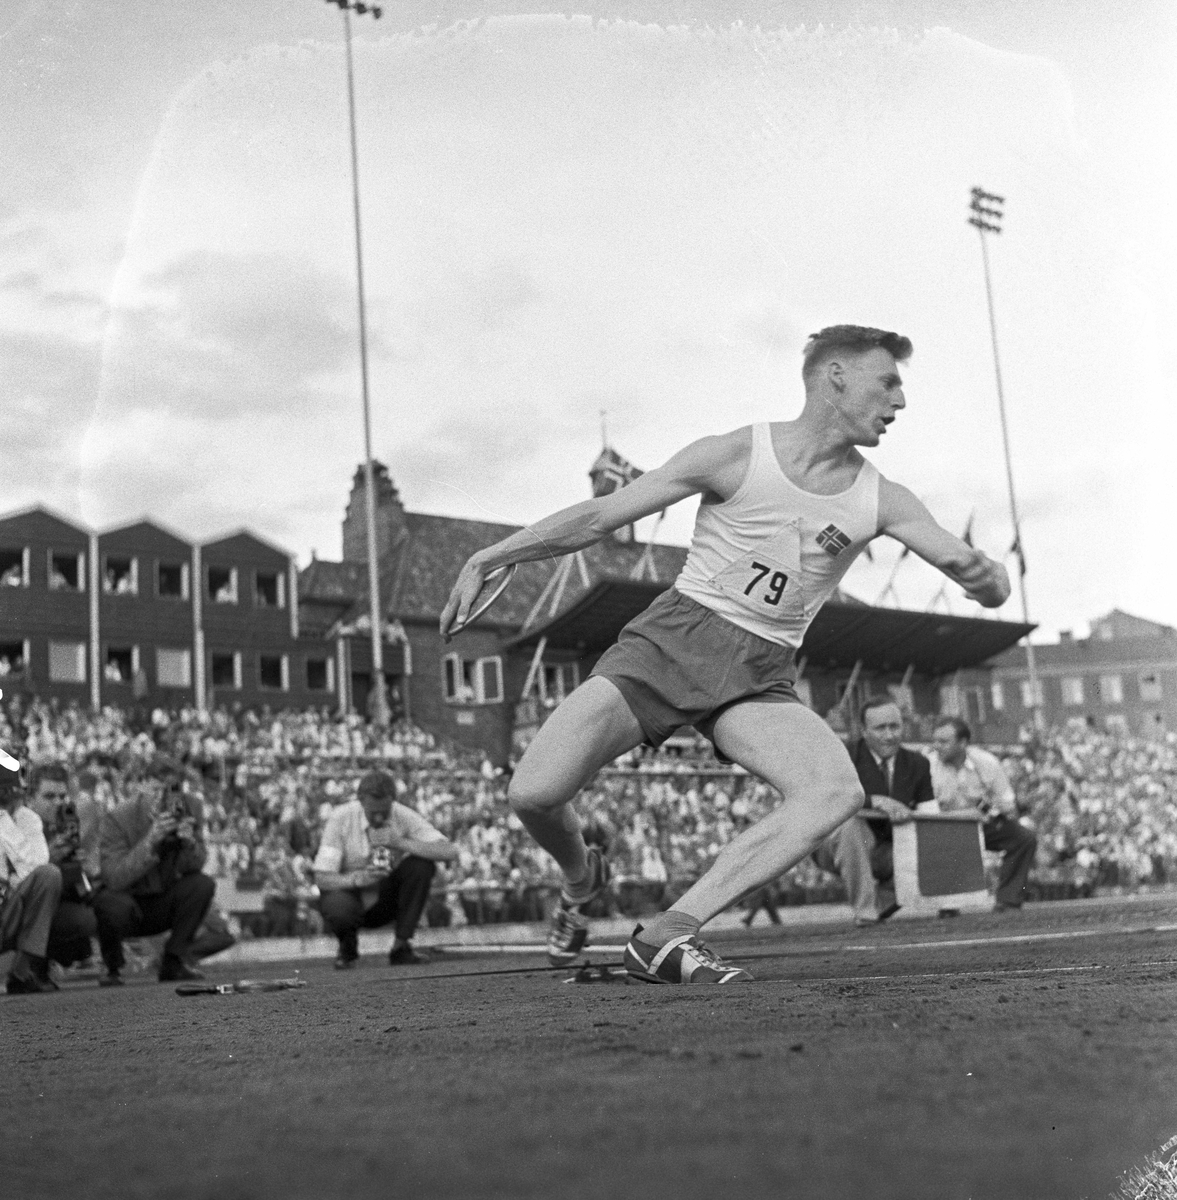 Serie. Landskamp i friidrett mellom Norge og Sverige på Bislett, Oslo. Fotografert 1956.